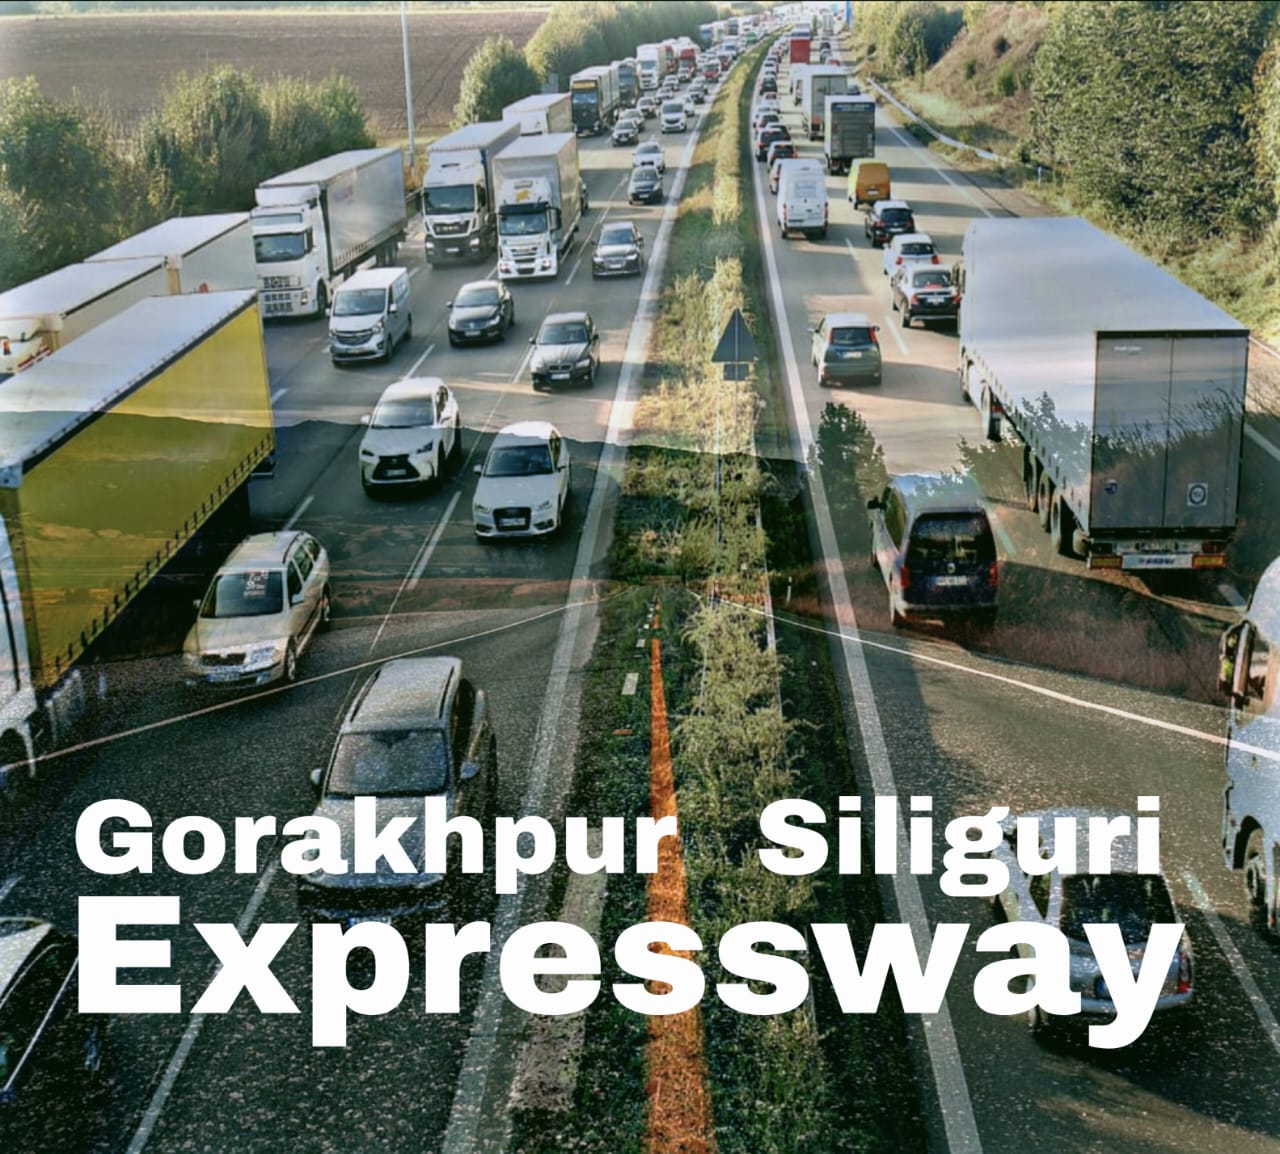 Gorakhpur Siliguri expressway